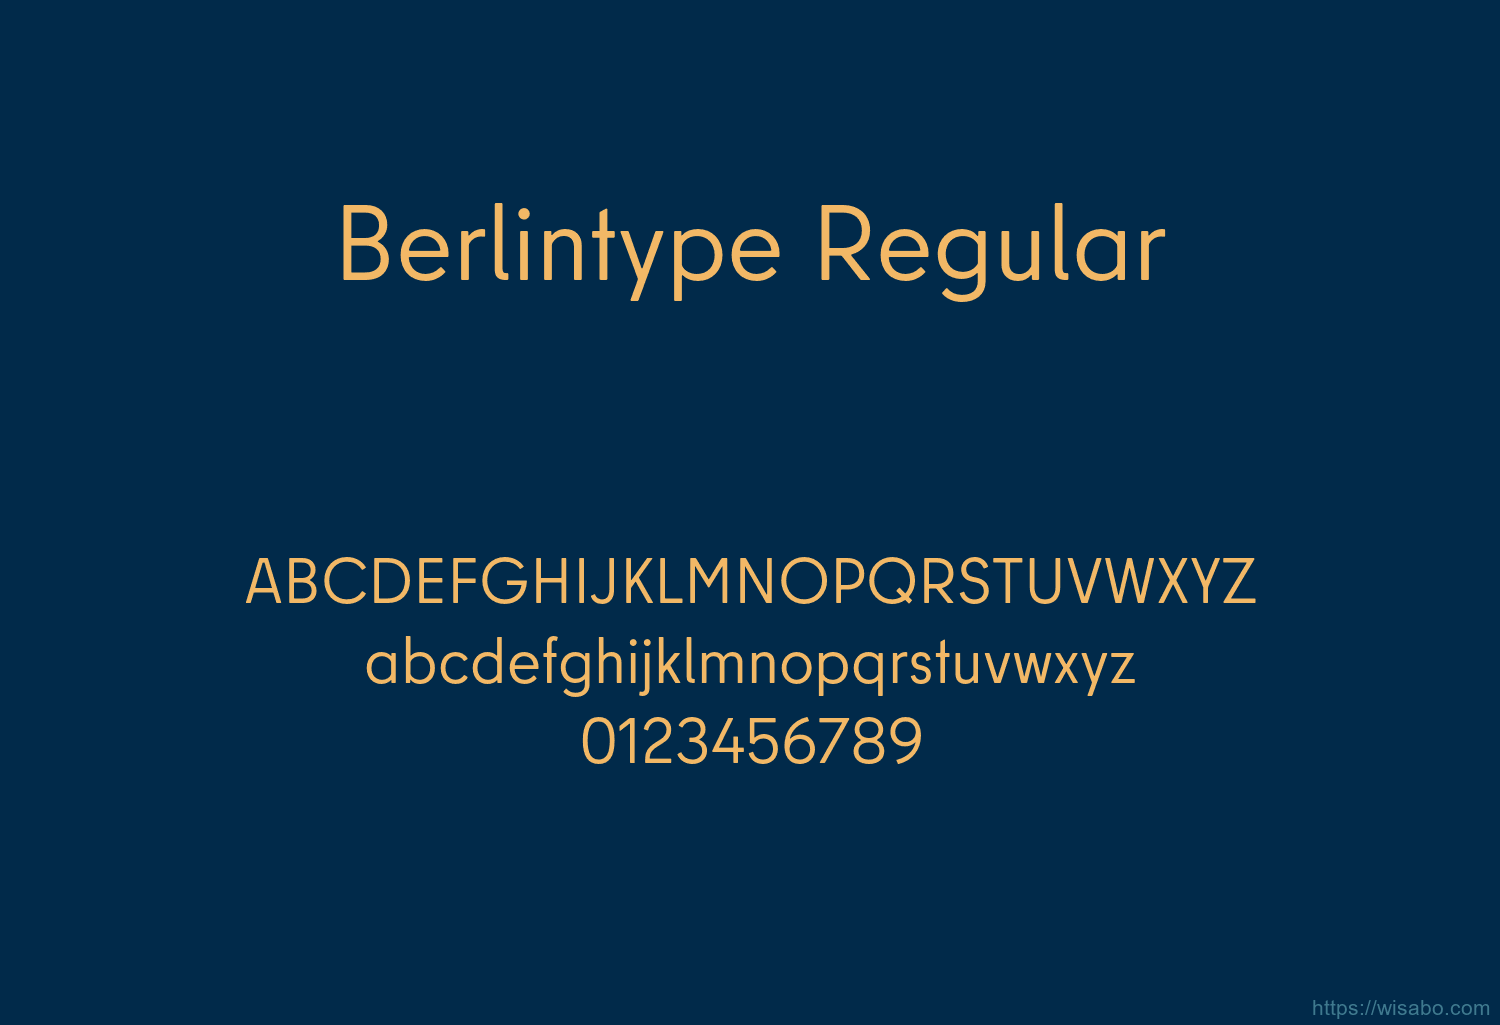 Berlintype Regular